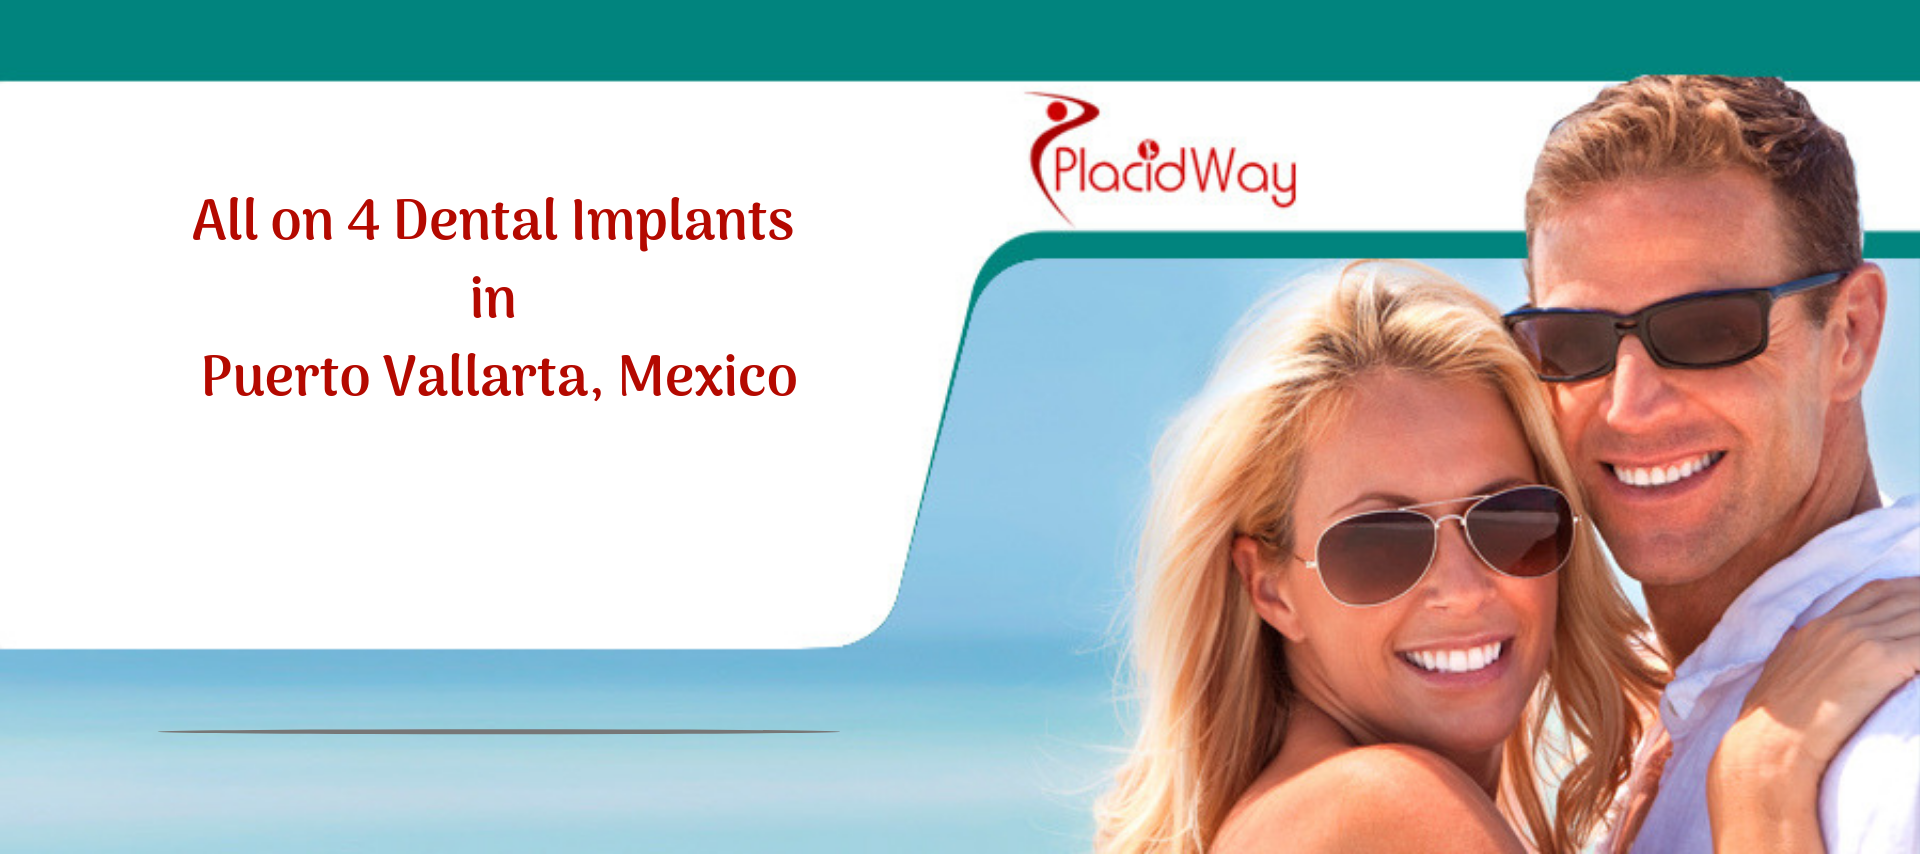 All on 4 Dental Implants in Puerto Vallarta, Mexico